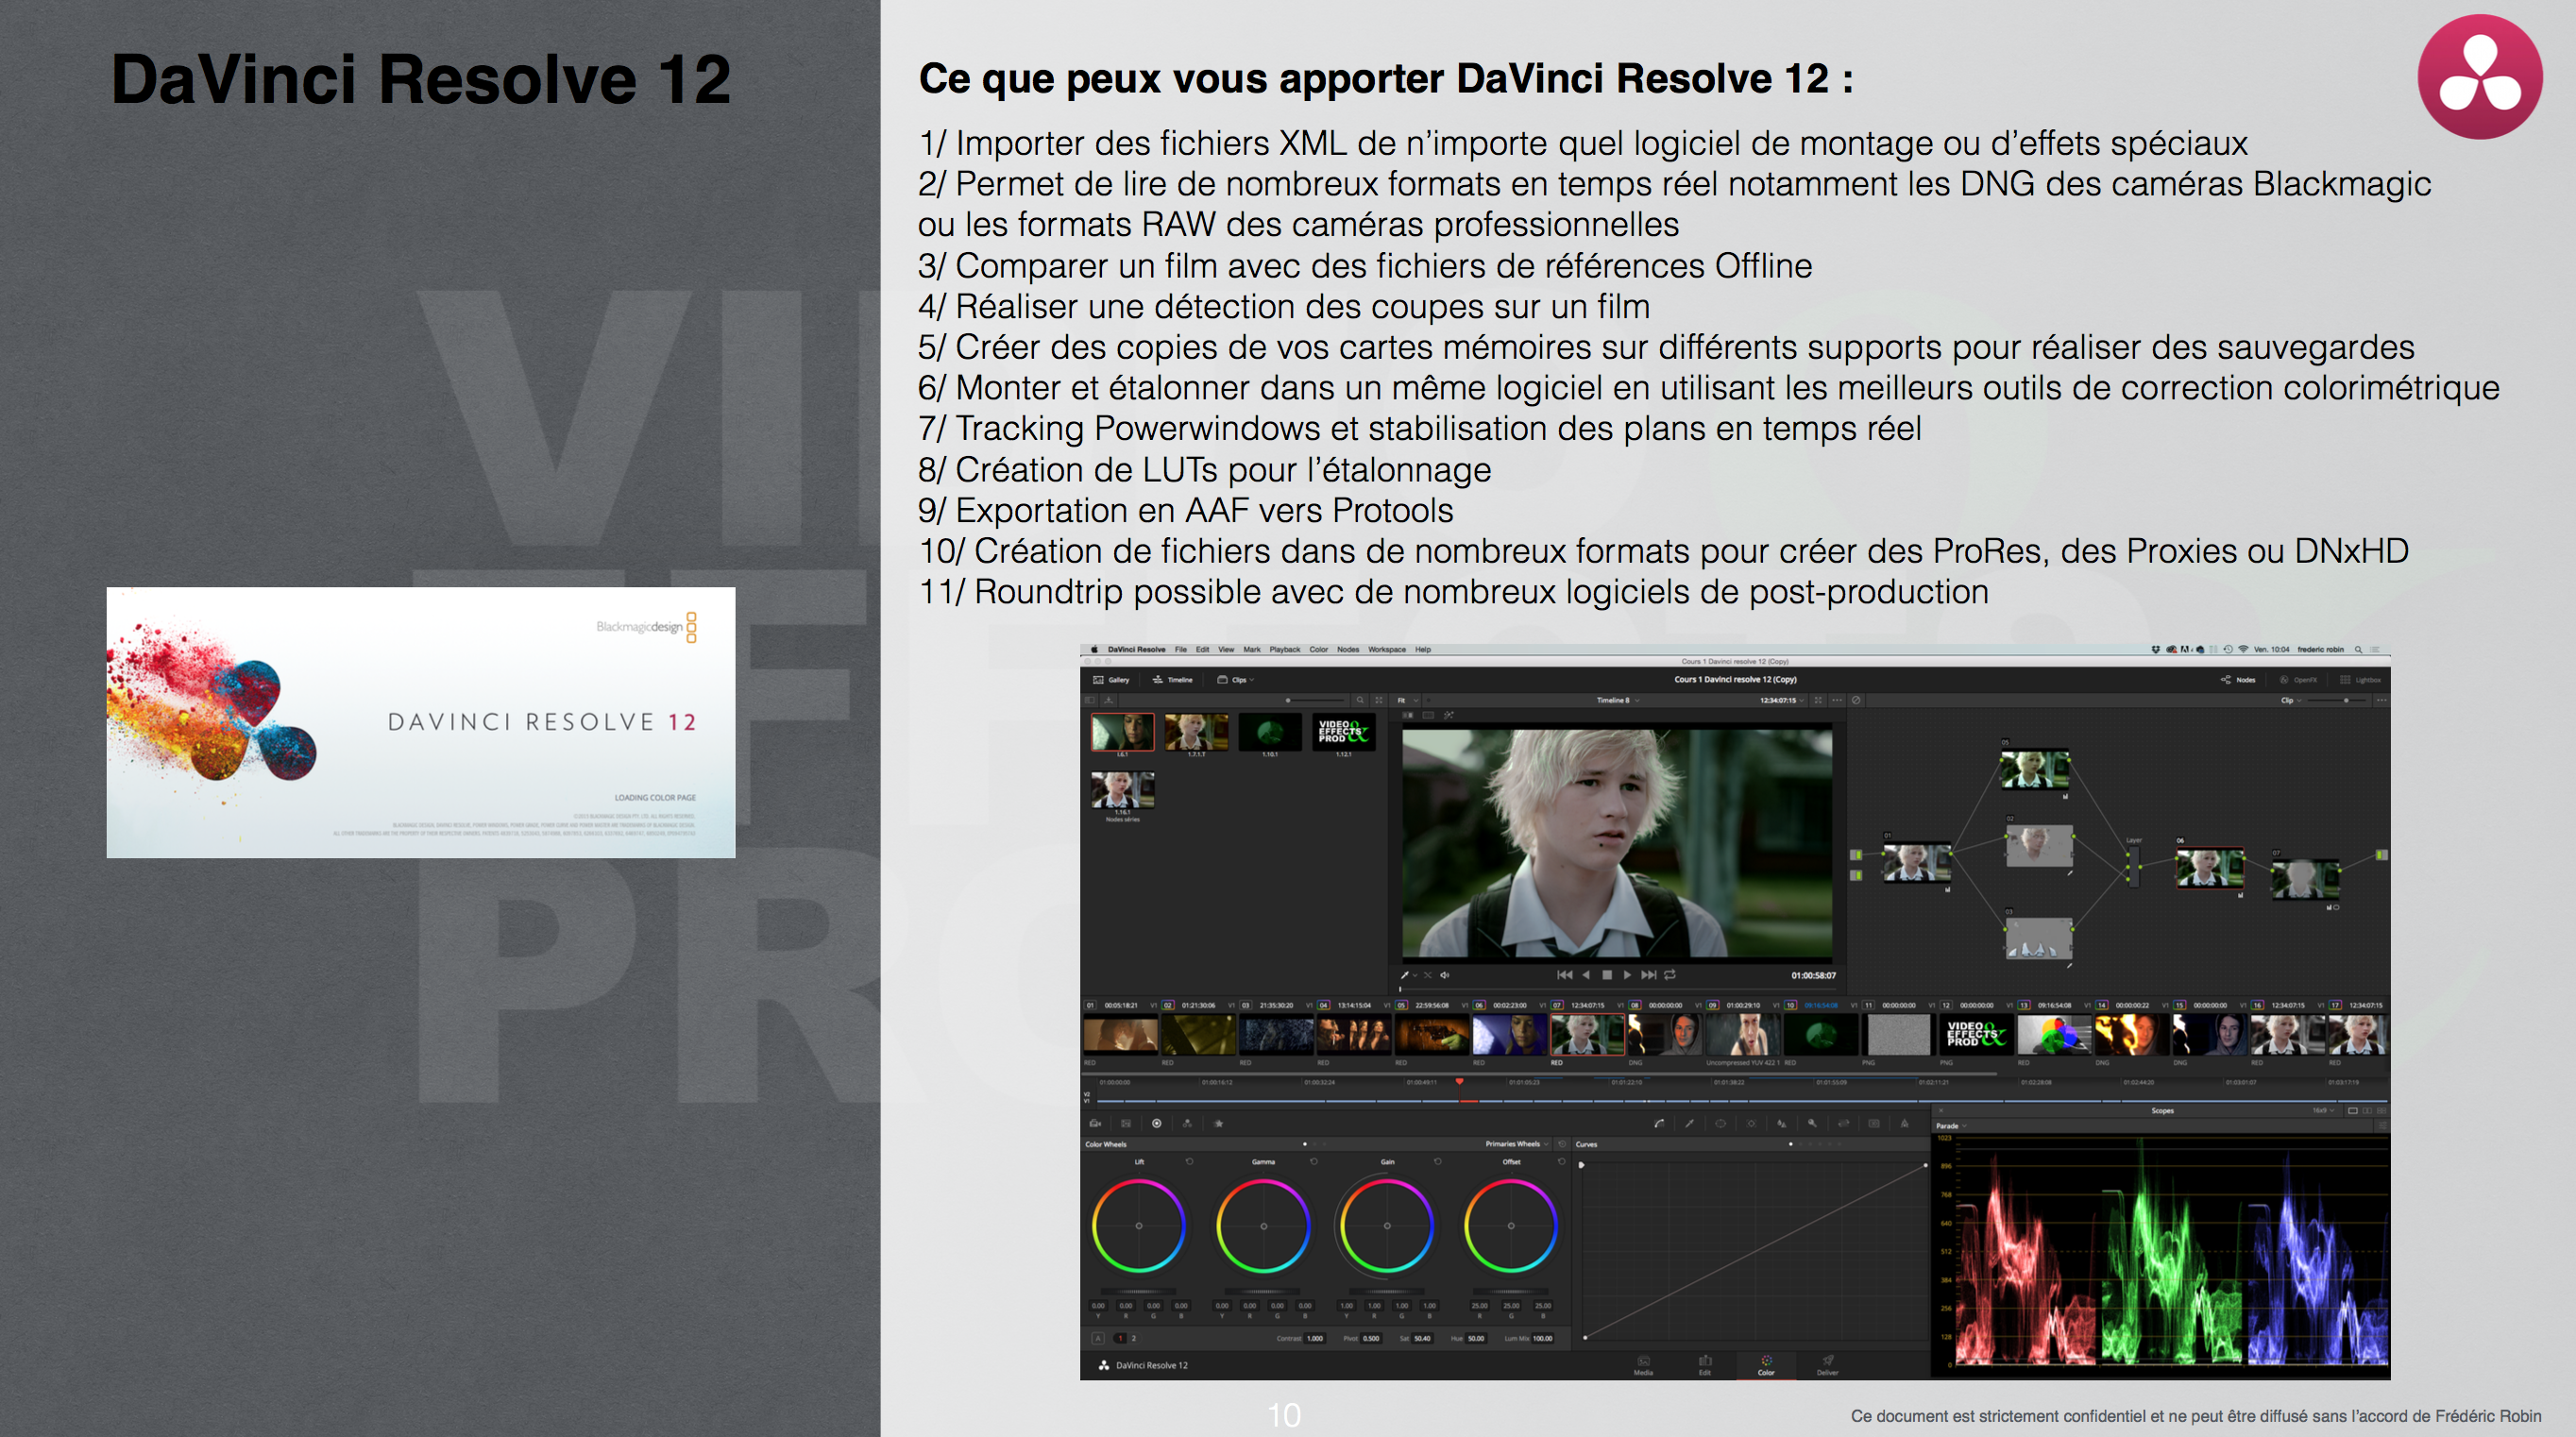 PDF de présentation du logiciel DavInci Resolve 12 Salon de la photo 2015